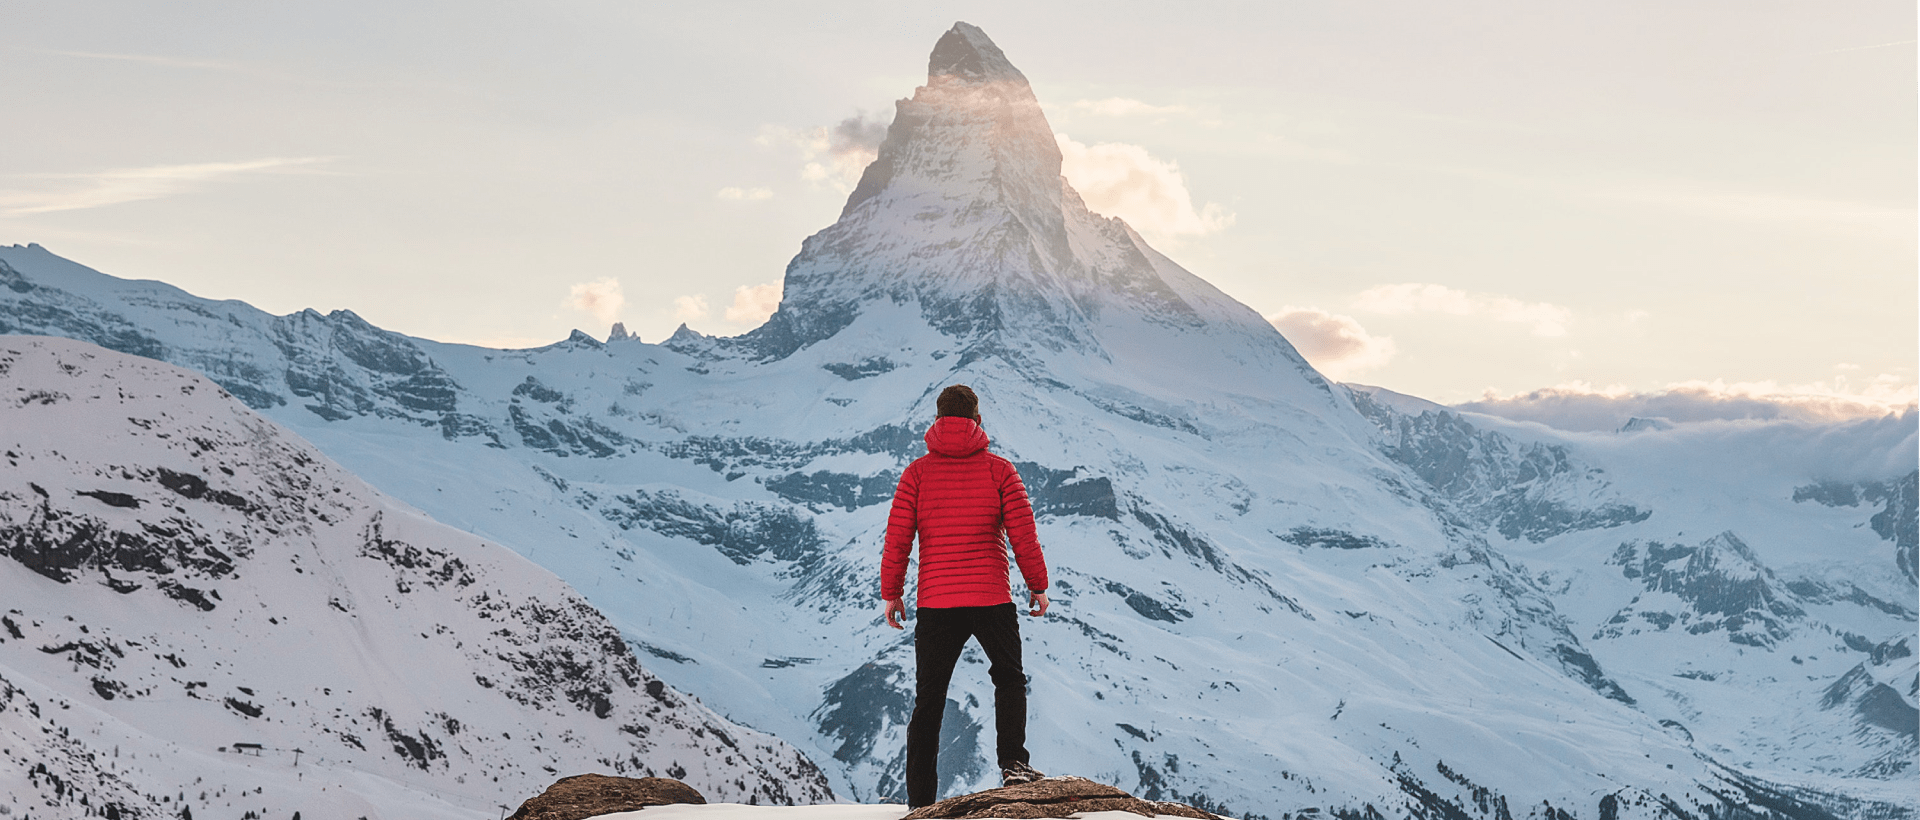 Bergspitze als Sinnbild für einen top-optimierten Beitrag bei Bing Places